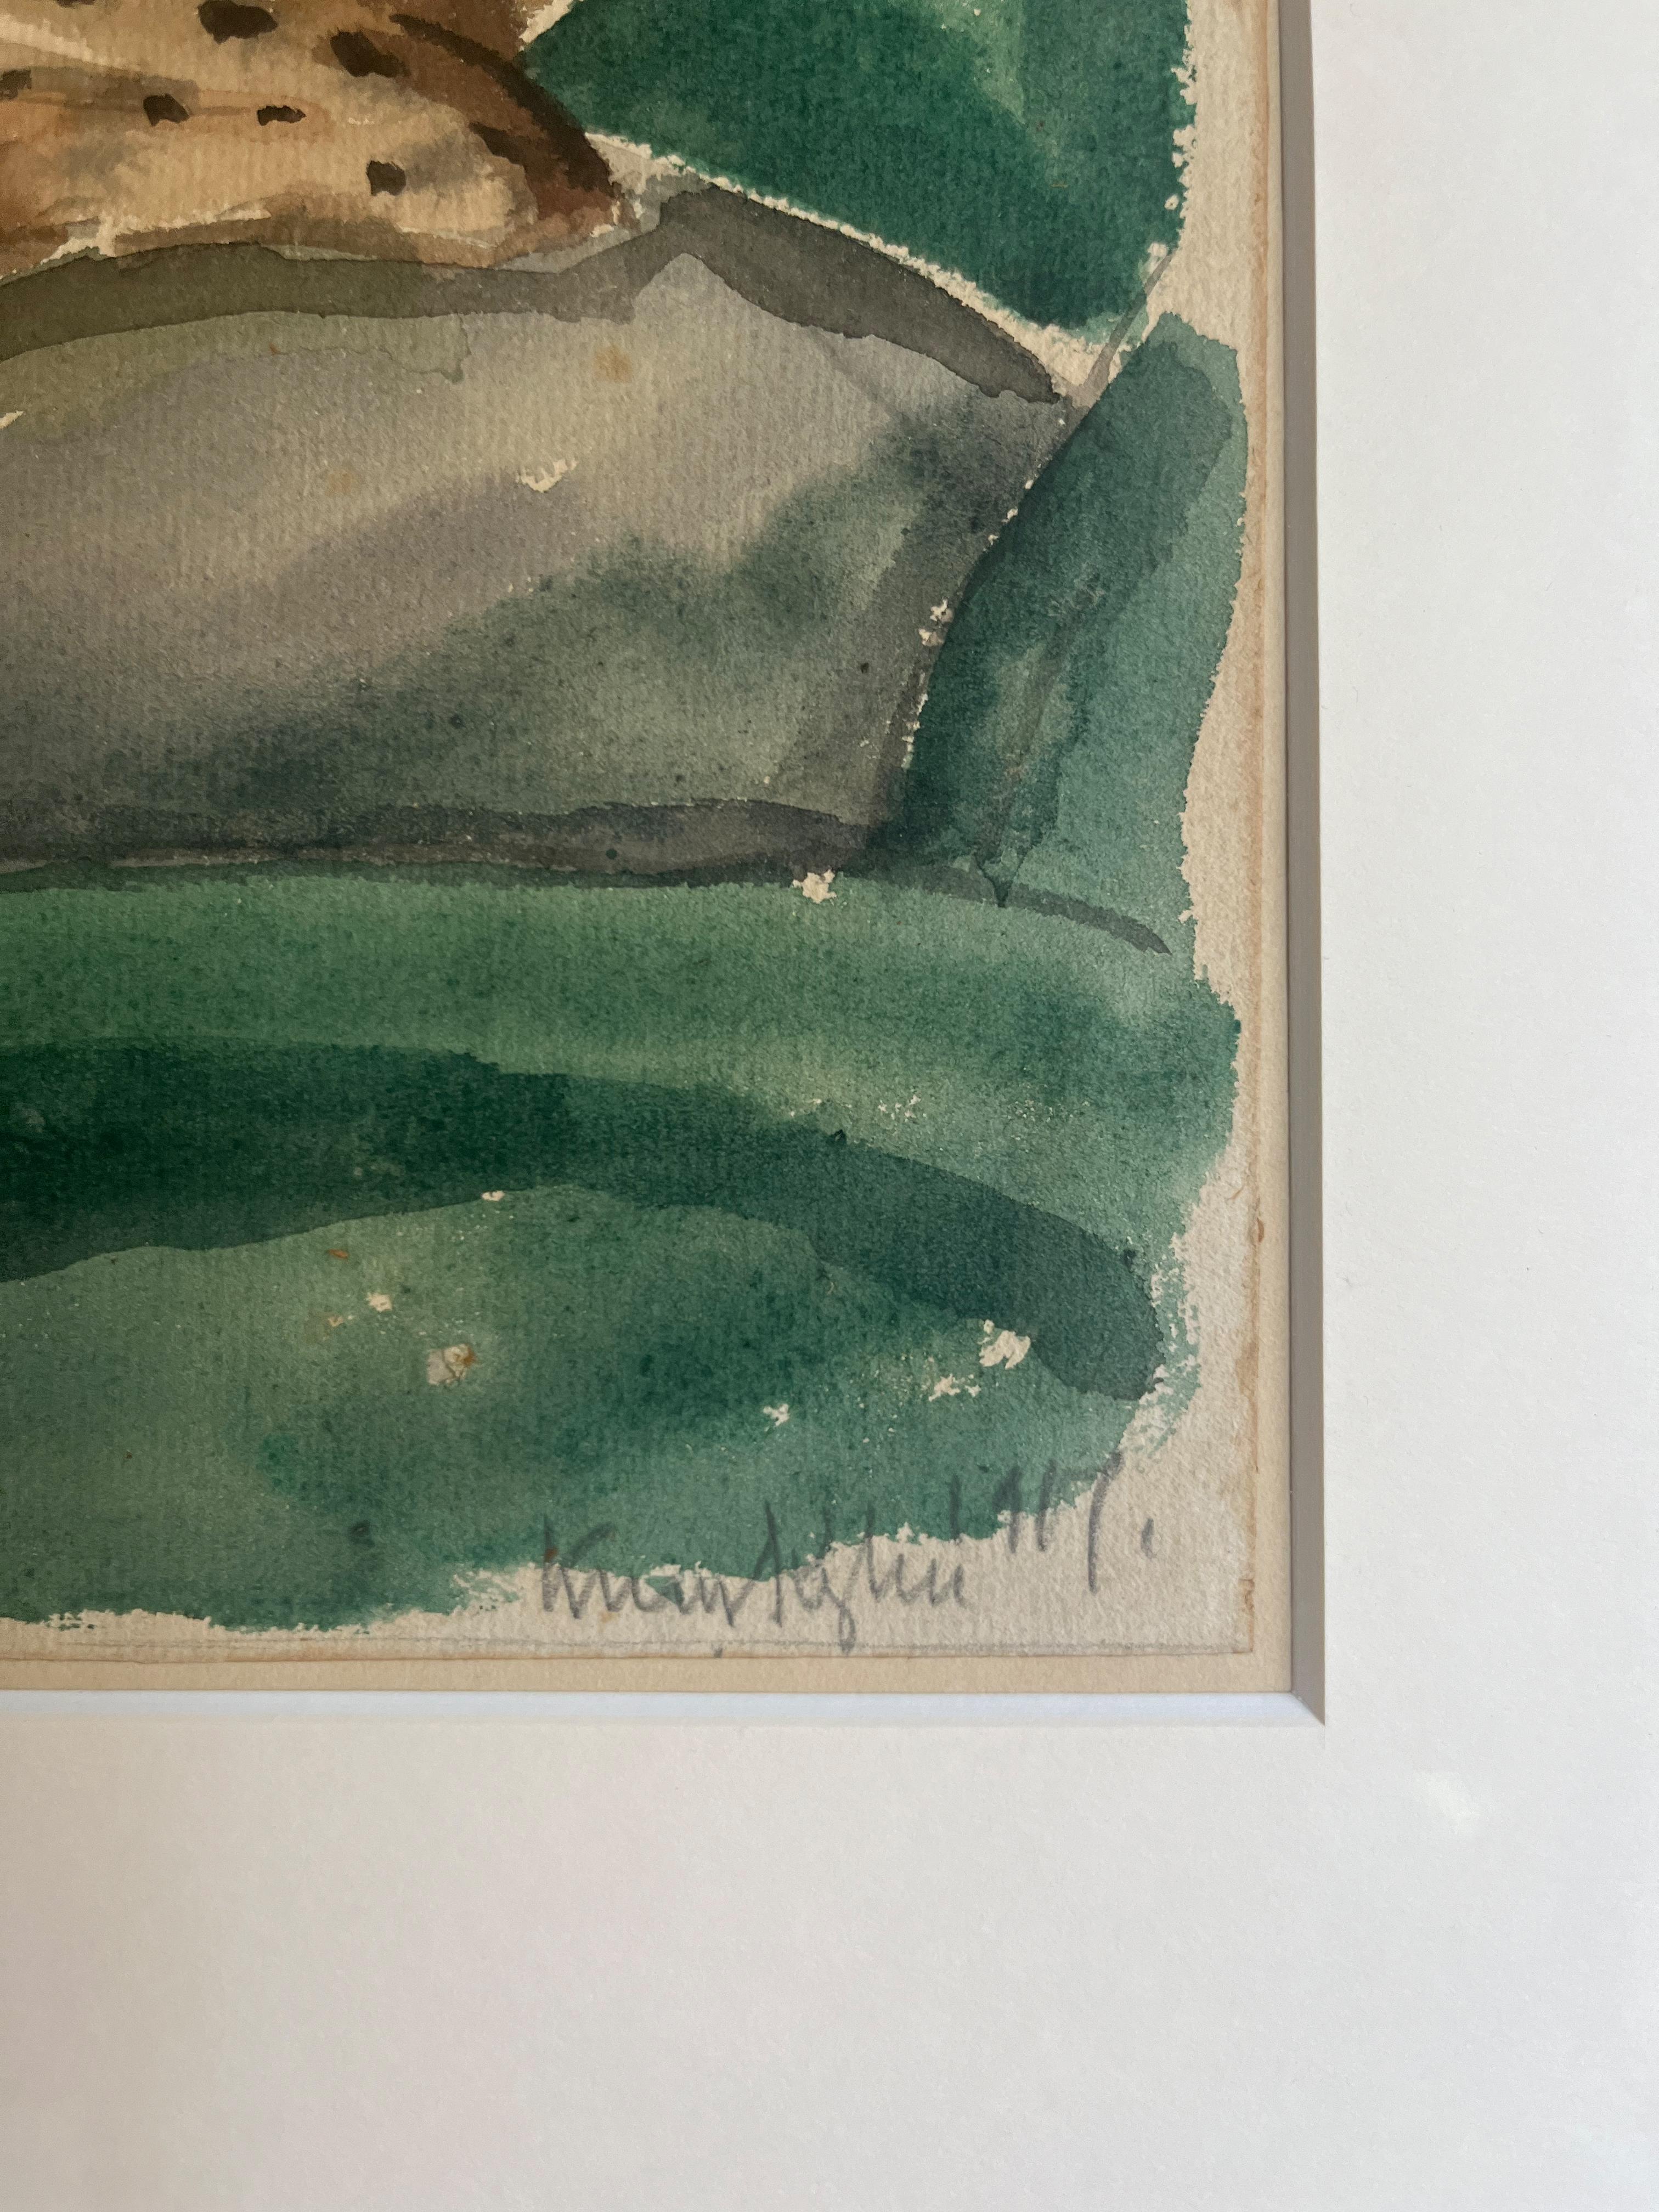 Komposition von Knud Kyhn, 1917
Aquarell auf Papier. Blattgröße 30×38 cm, signiert und gerahmt.

Knud Kyhn (1880 - 1969) war ein dänischer Maler, Illustrator und Keramikbildhauer, der vor allem für seine Tierfiguren bekannt ist, die er während